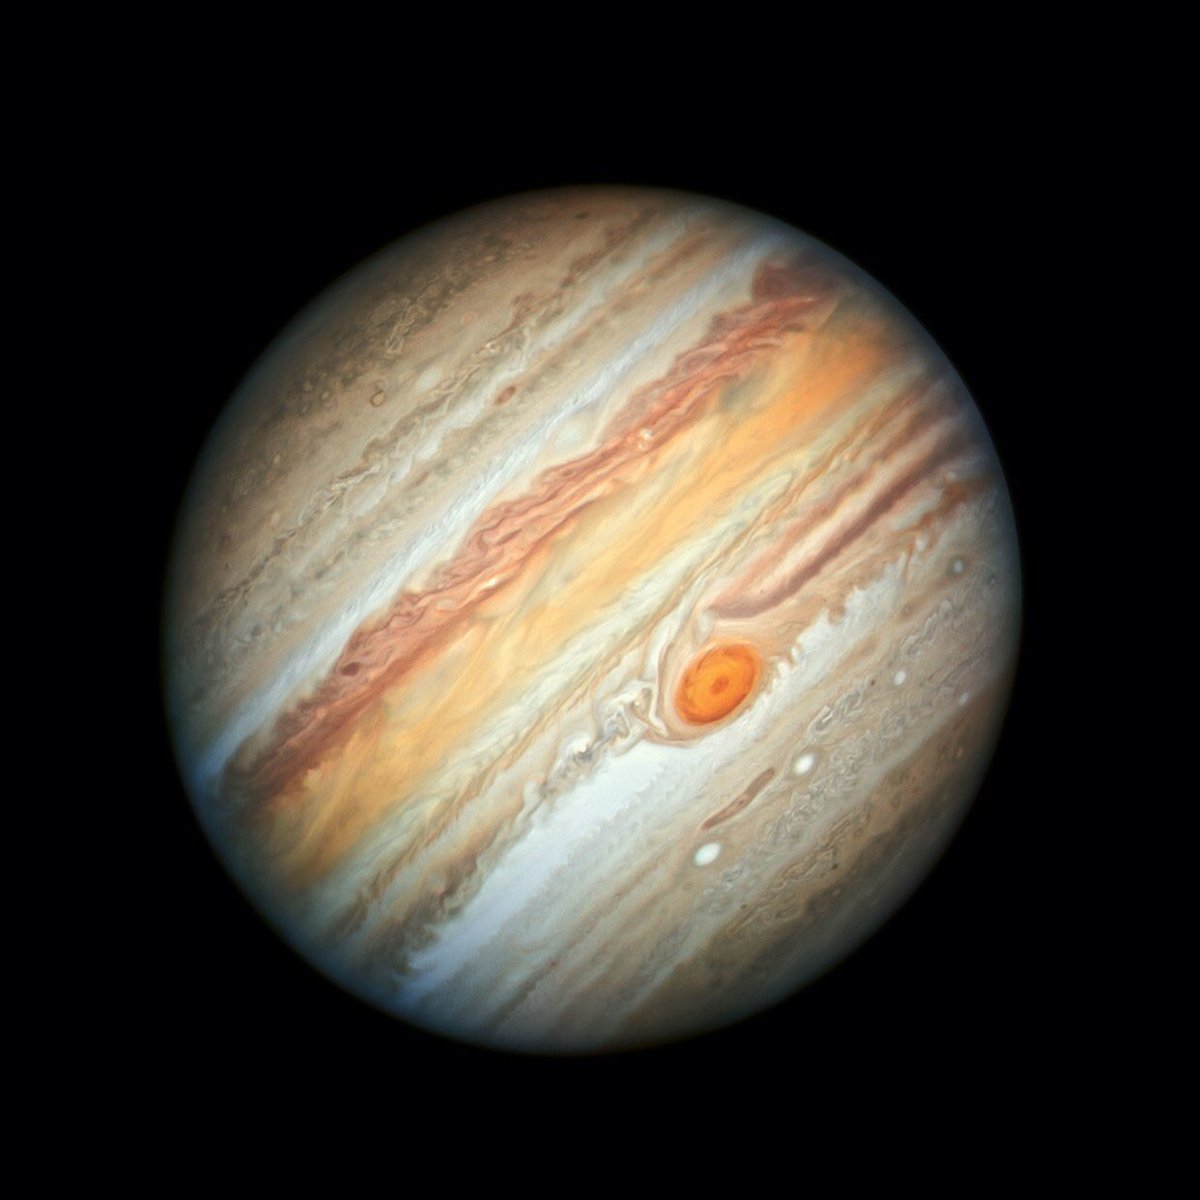 Nasaが木星の最新画像を公開した結果 全然美しくない 話題の画像プラス